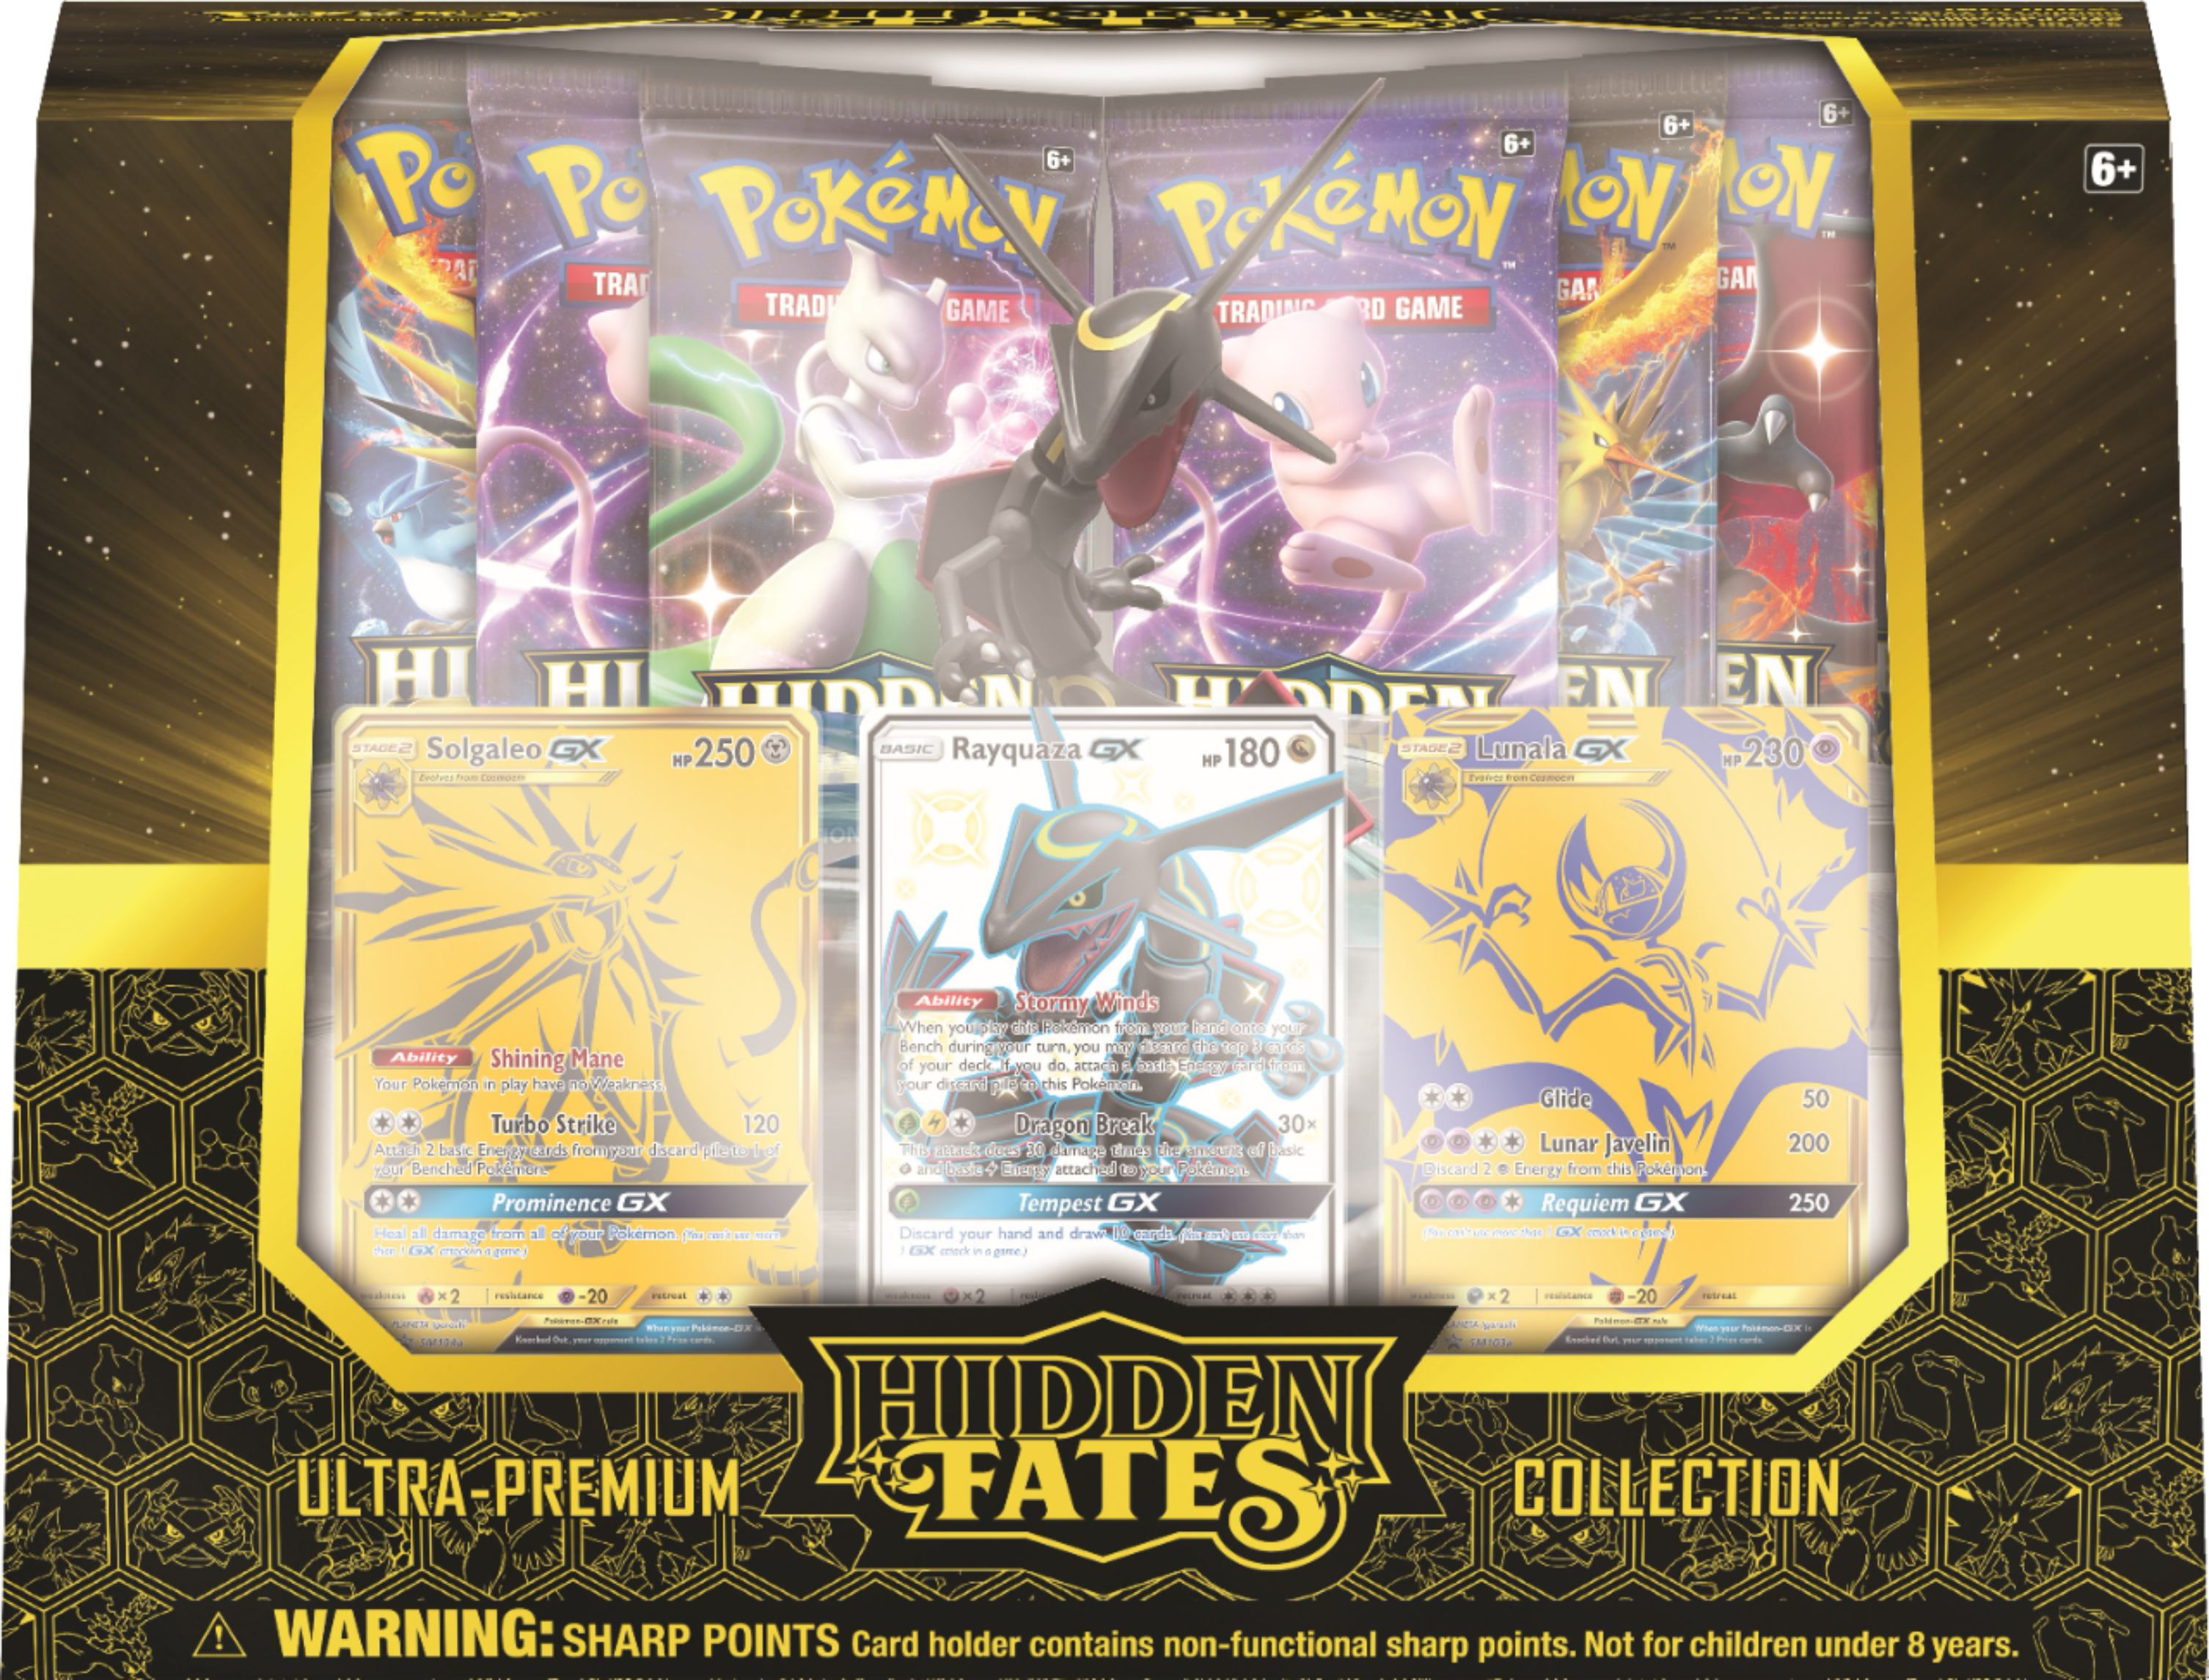 Pokémon Trading Card Game Hidden Fates Ultra Premium Collection